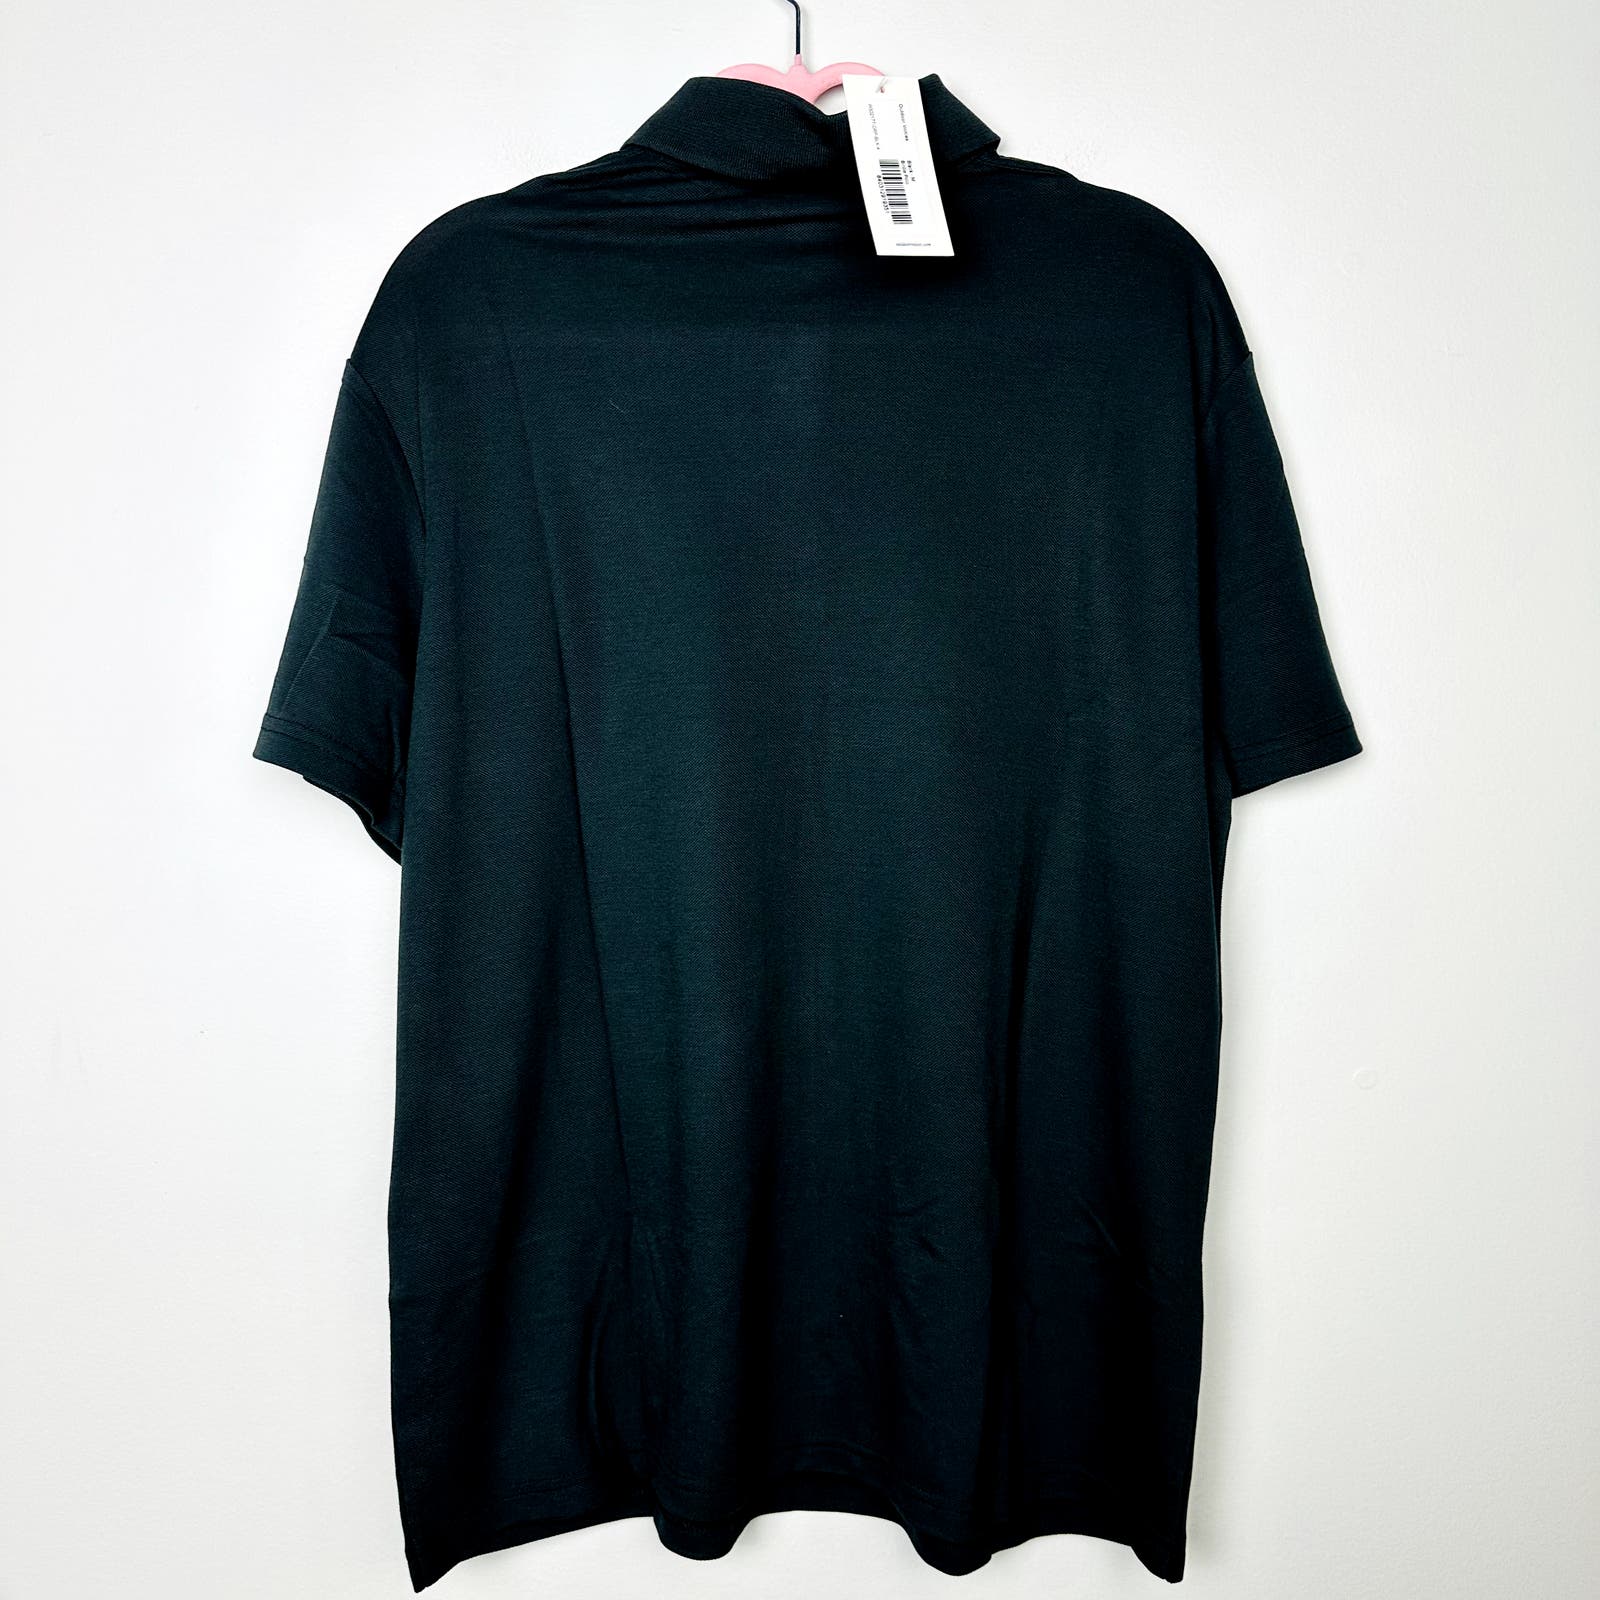 Outdoor Voices NWT Birdie Polo Shirt Black Size Medium